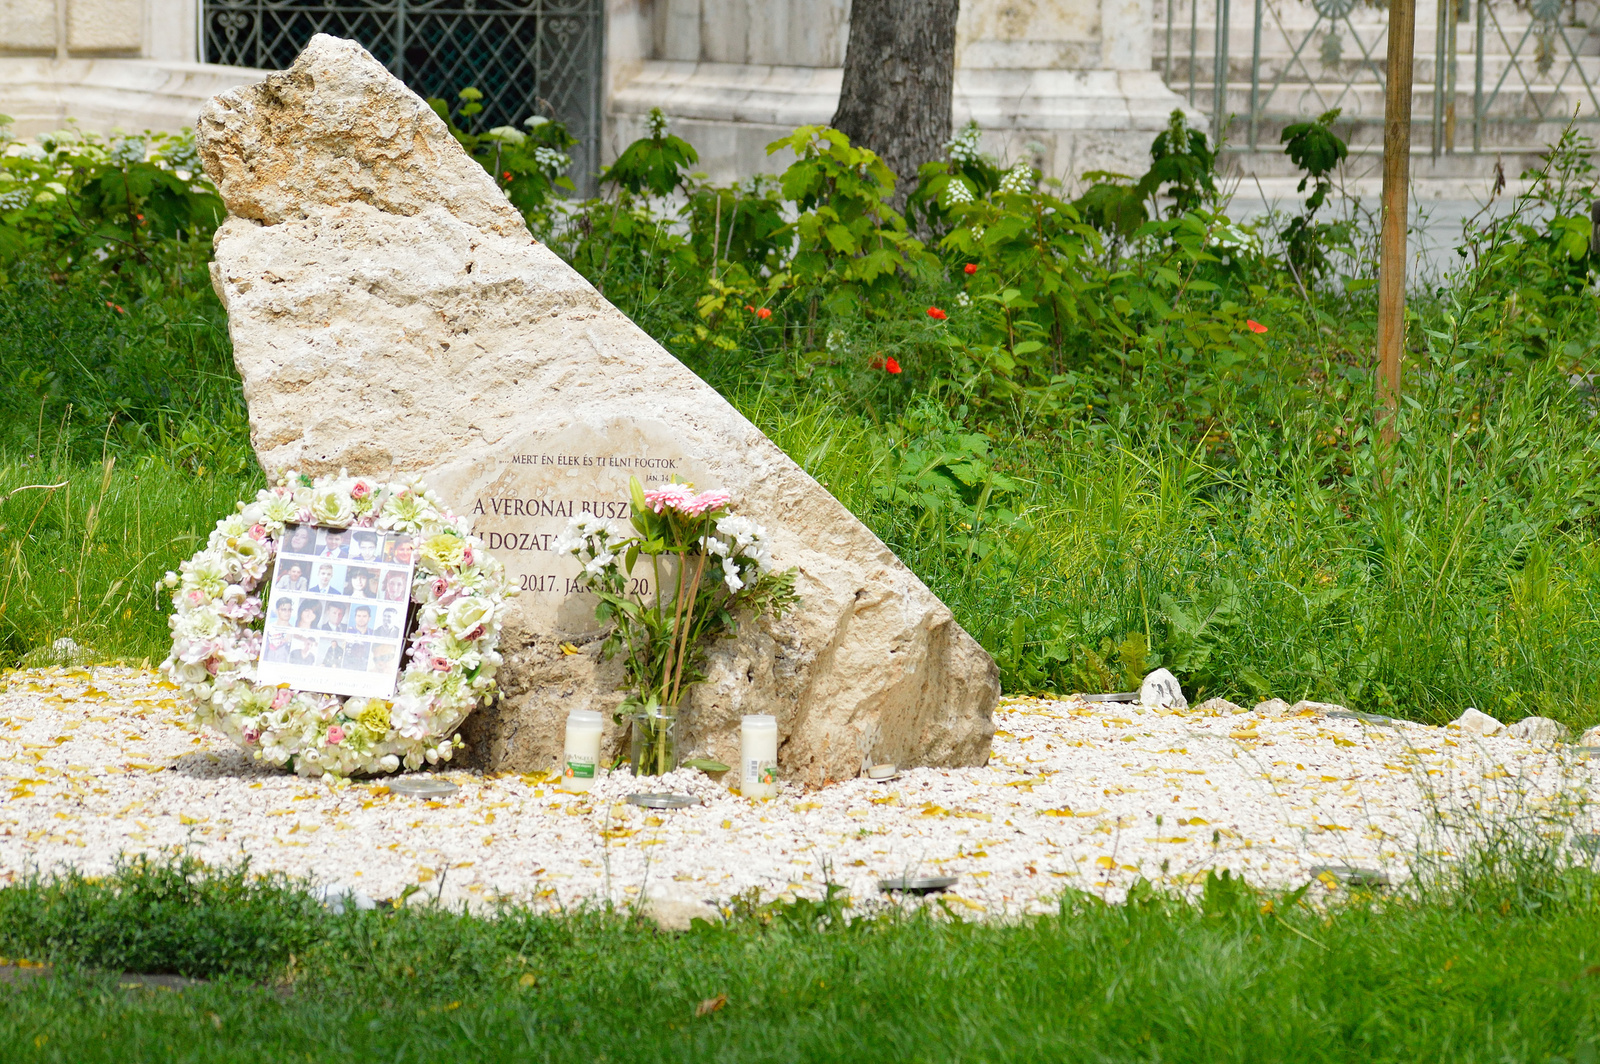 Veronai buszbaleset áldozatainak emlékműve